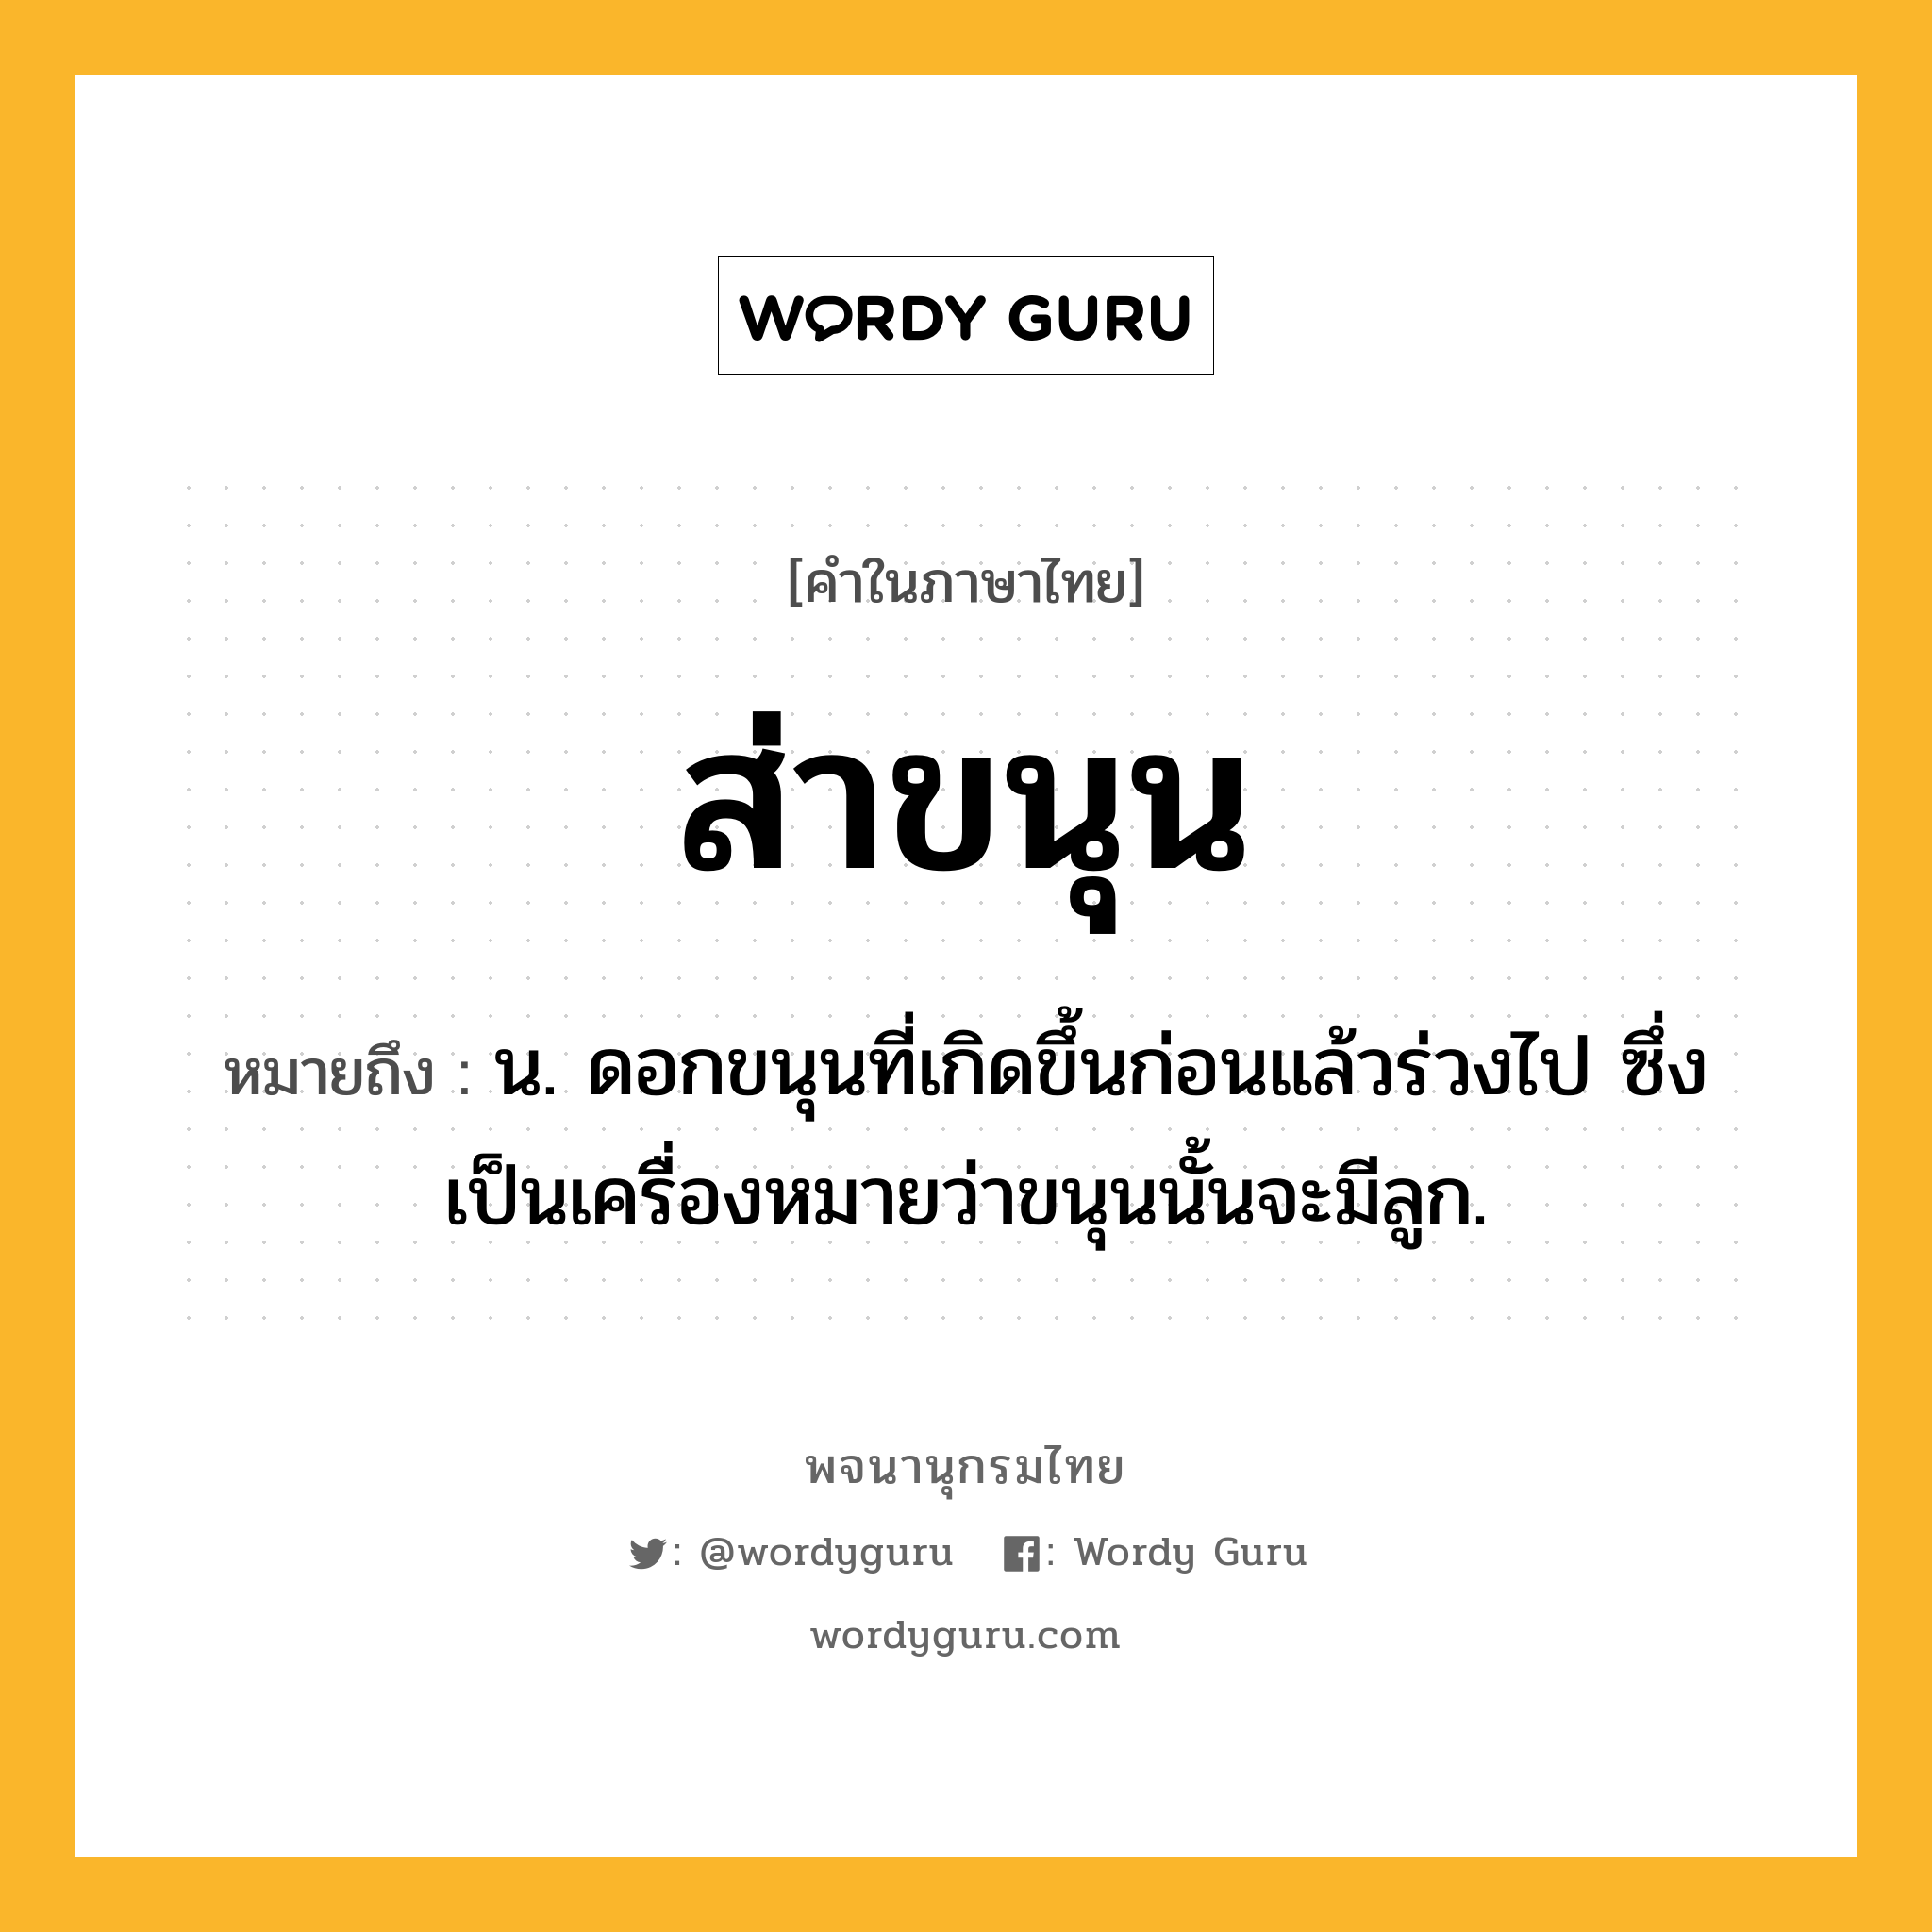 ส่าขนุน ความหมาย หมายถึงอะไร?, คำในภาษาไทย ส่าขนุน หมายถึง น. ดอกขนุนที่เกิดขึ้นก่อนแล้วร่วงไป ซึ่งเป็นเครื่องหมายว่าขนุนนั้นจะมีลูก.